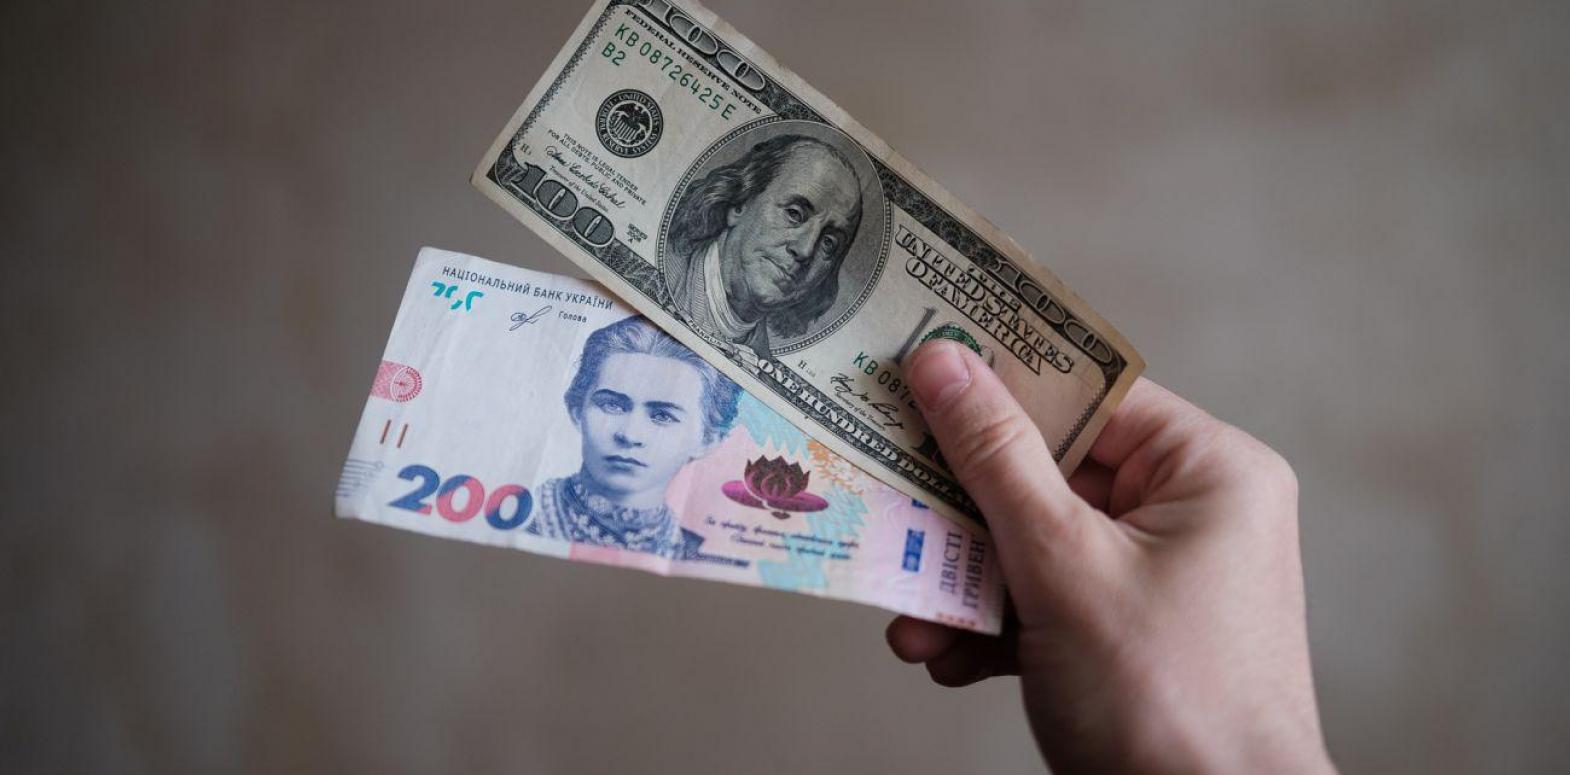 НБУ впервые поднял официальный курс доллара выше 40 гривен